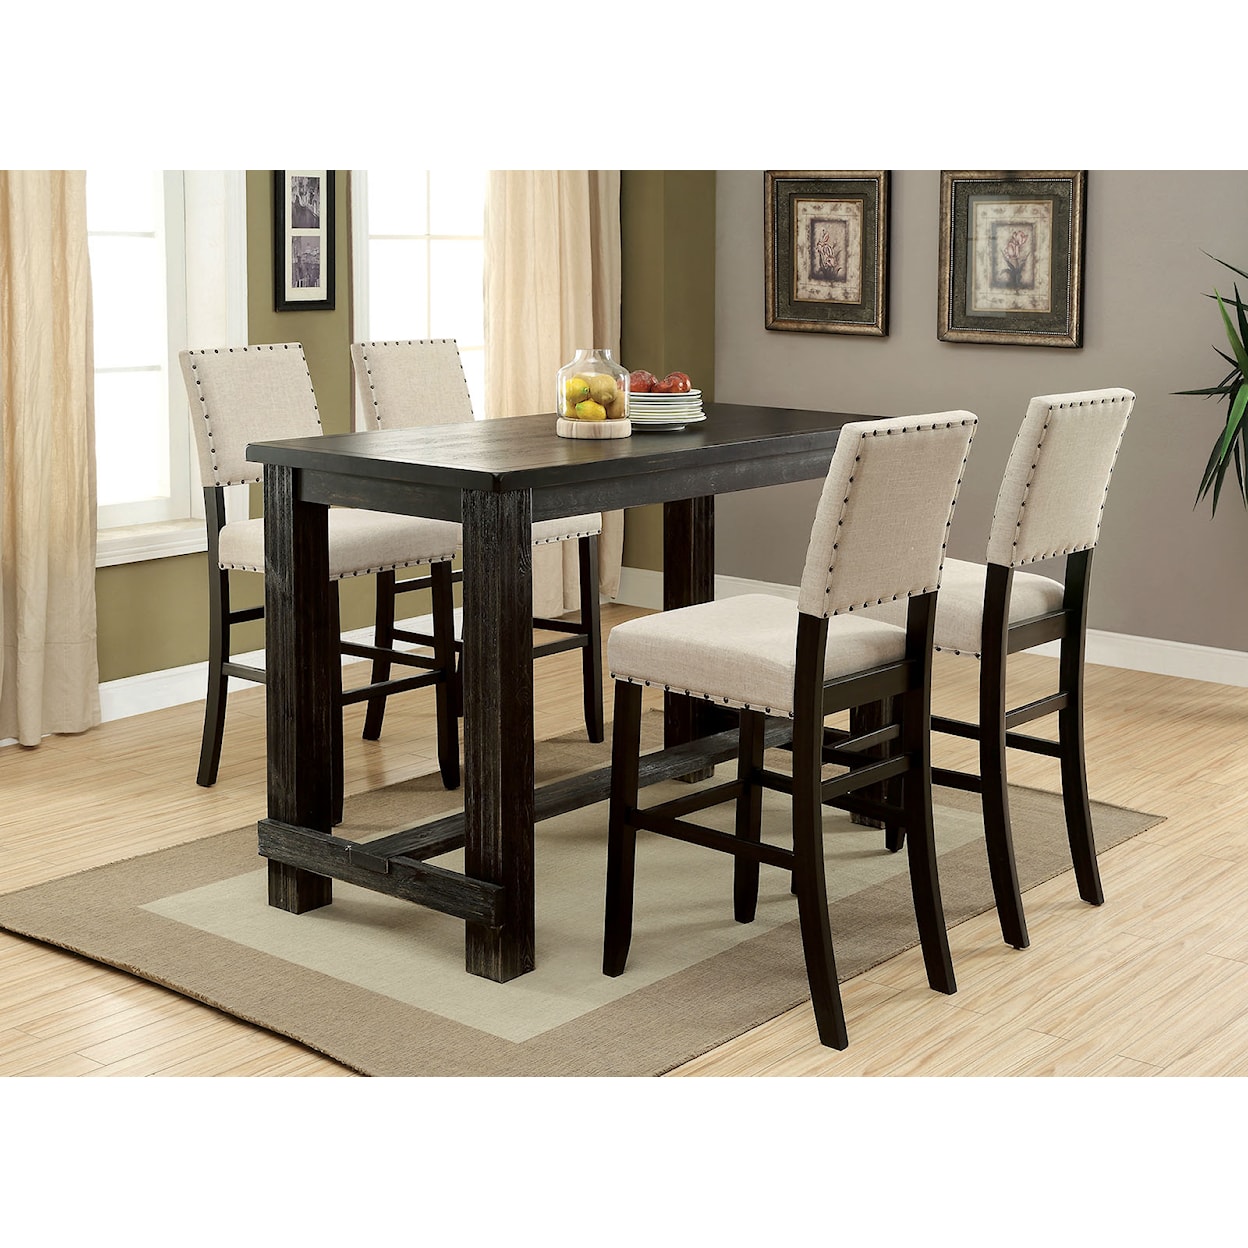 Furniture of America Sania III Bar Dining Table